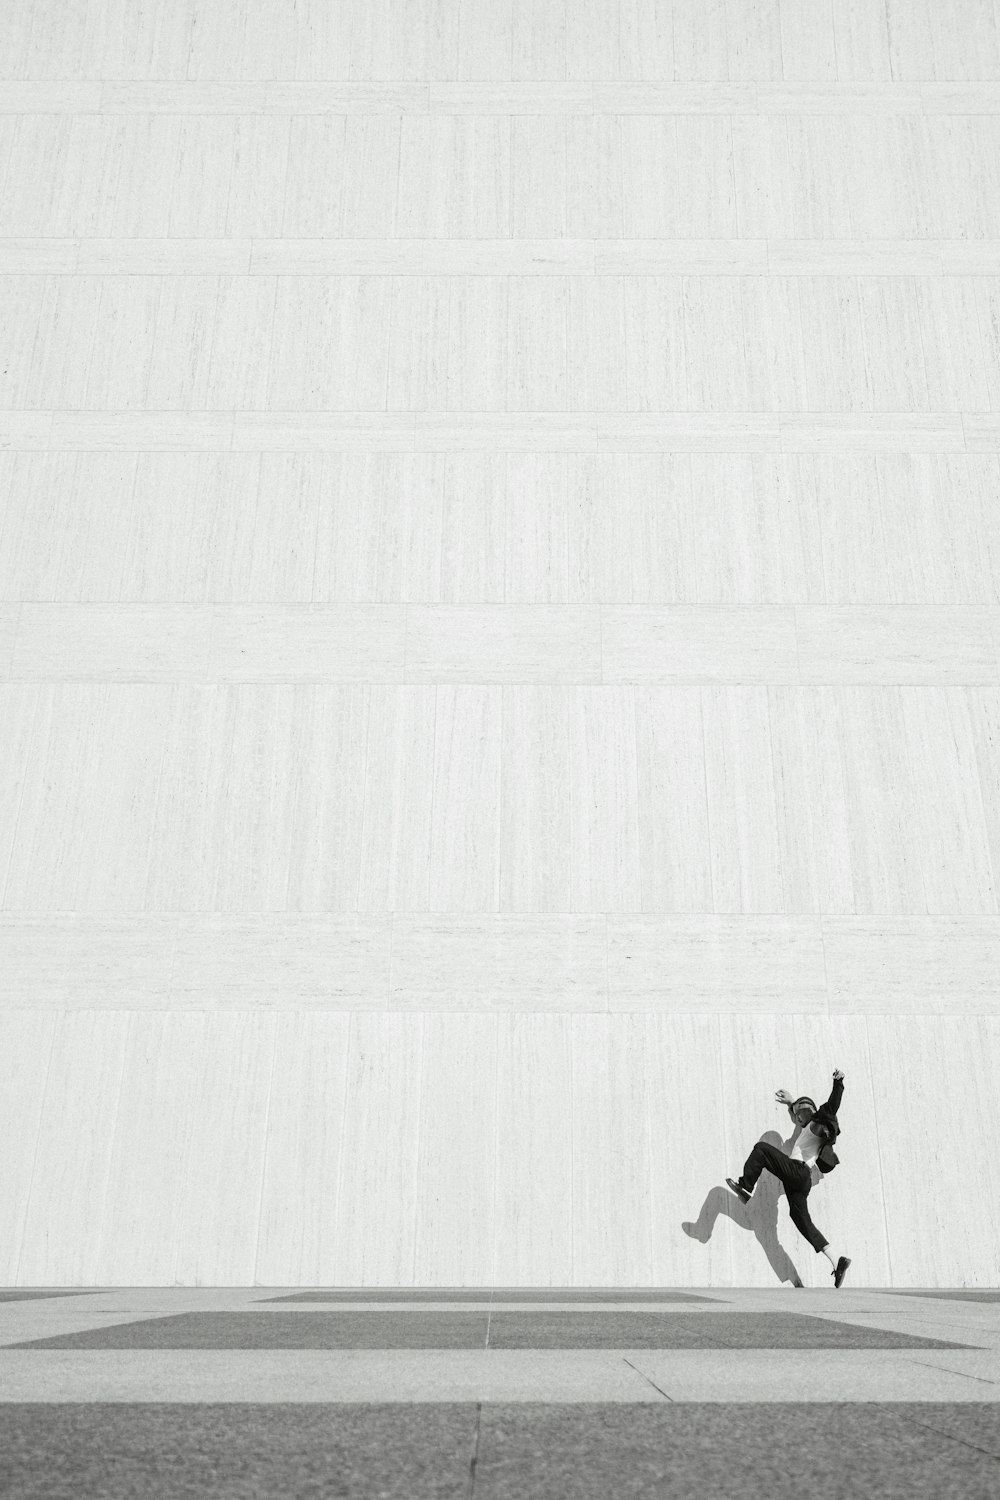 스케이트보드를 타고 공중으로 점프하는 사람